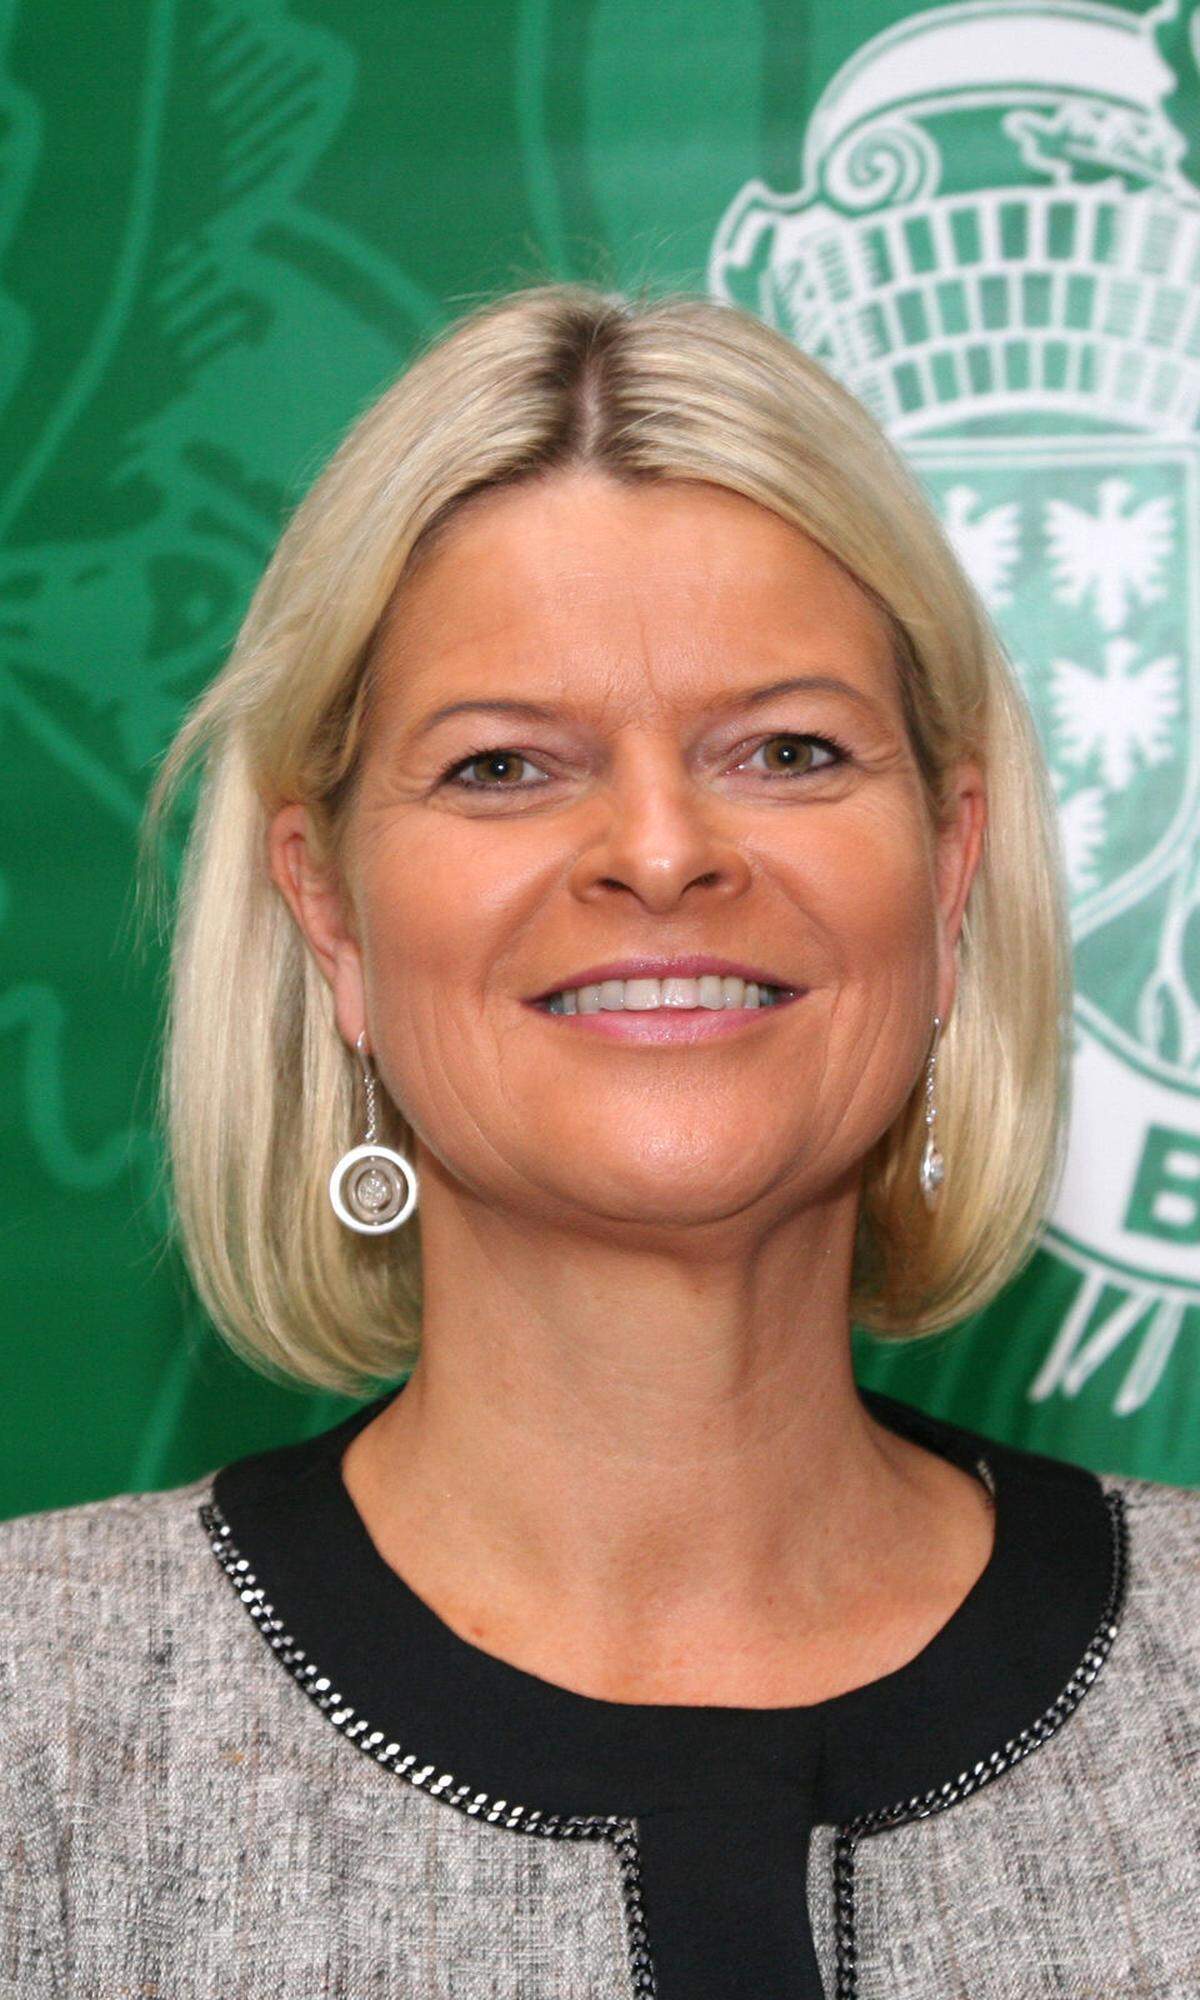 Der Name Klaudia Tanner wird ebenfalls in Zusammenhang mit dem Landwirtschaftsministerium genannt. Die 47-jährige Juristin ist Direktorin des niederösterreichischen Bauernbunds und war bereits zwischen 2001 und 2003 für ein Ministerium tätig – als Mitarbeiterin vom einstigen Innenminister Ernst Strasser (ÖVP).  